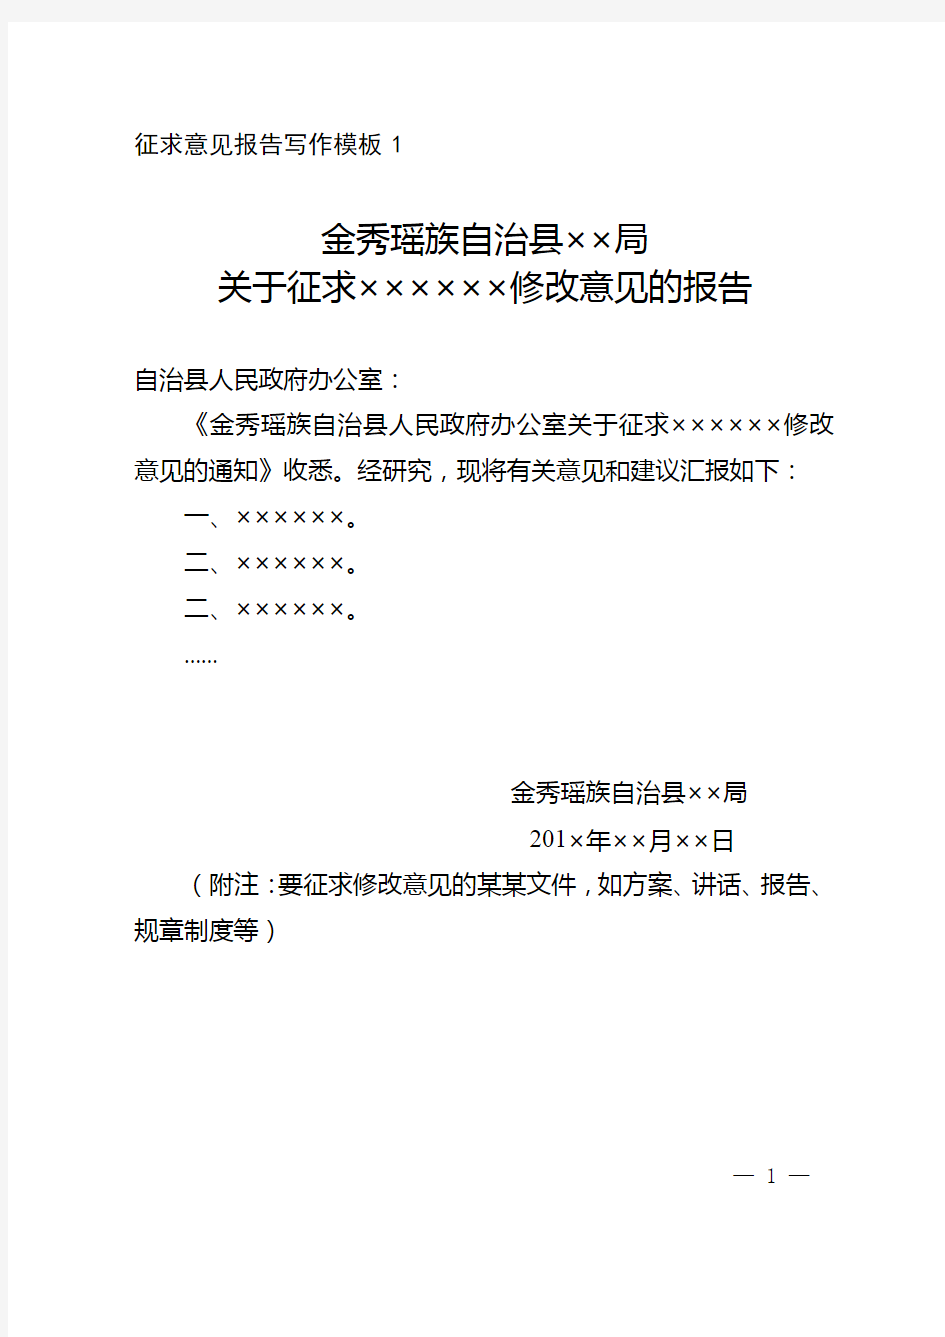 金秀瑶族自治县报告写作模板关于征求某某文件修改意见的报告